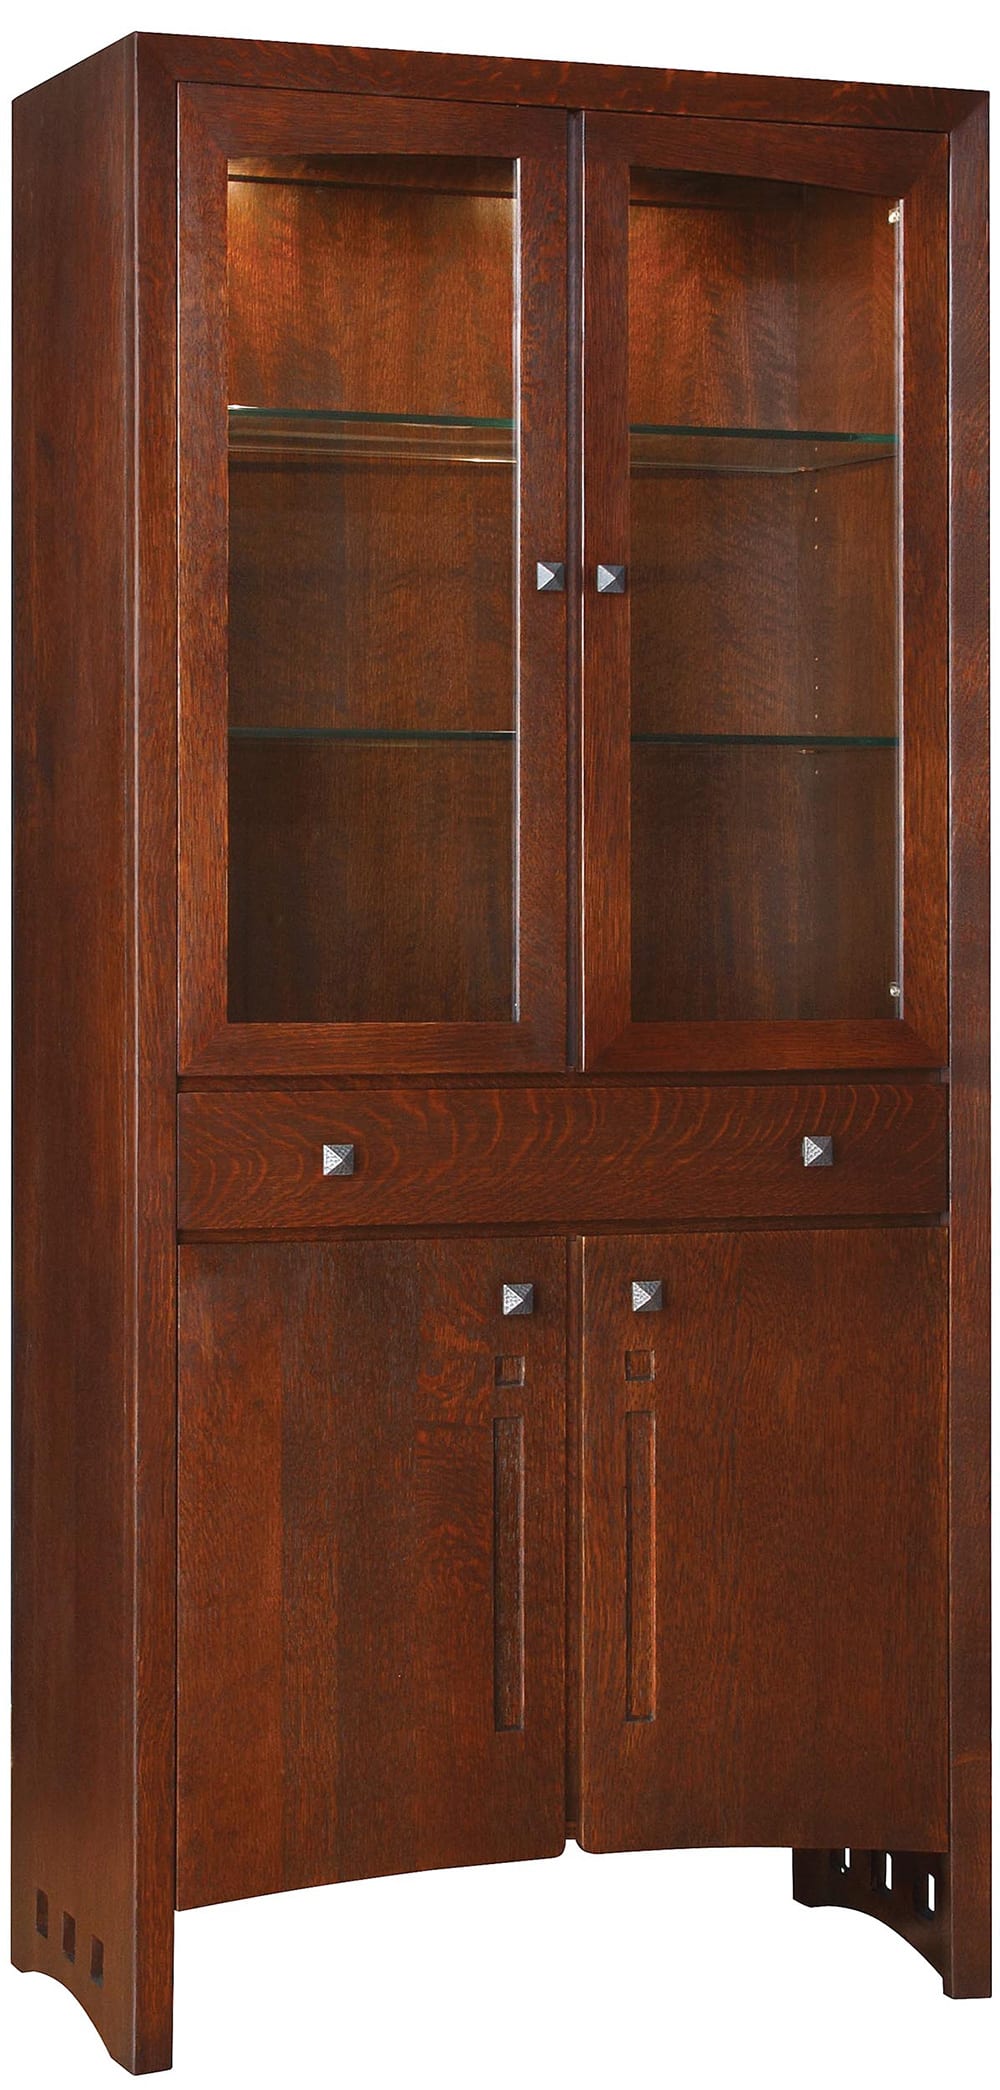 Highlands Display Cabinet - Stickley Brand